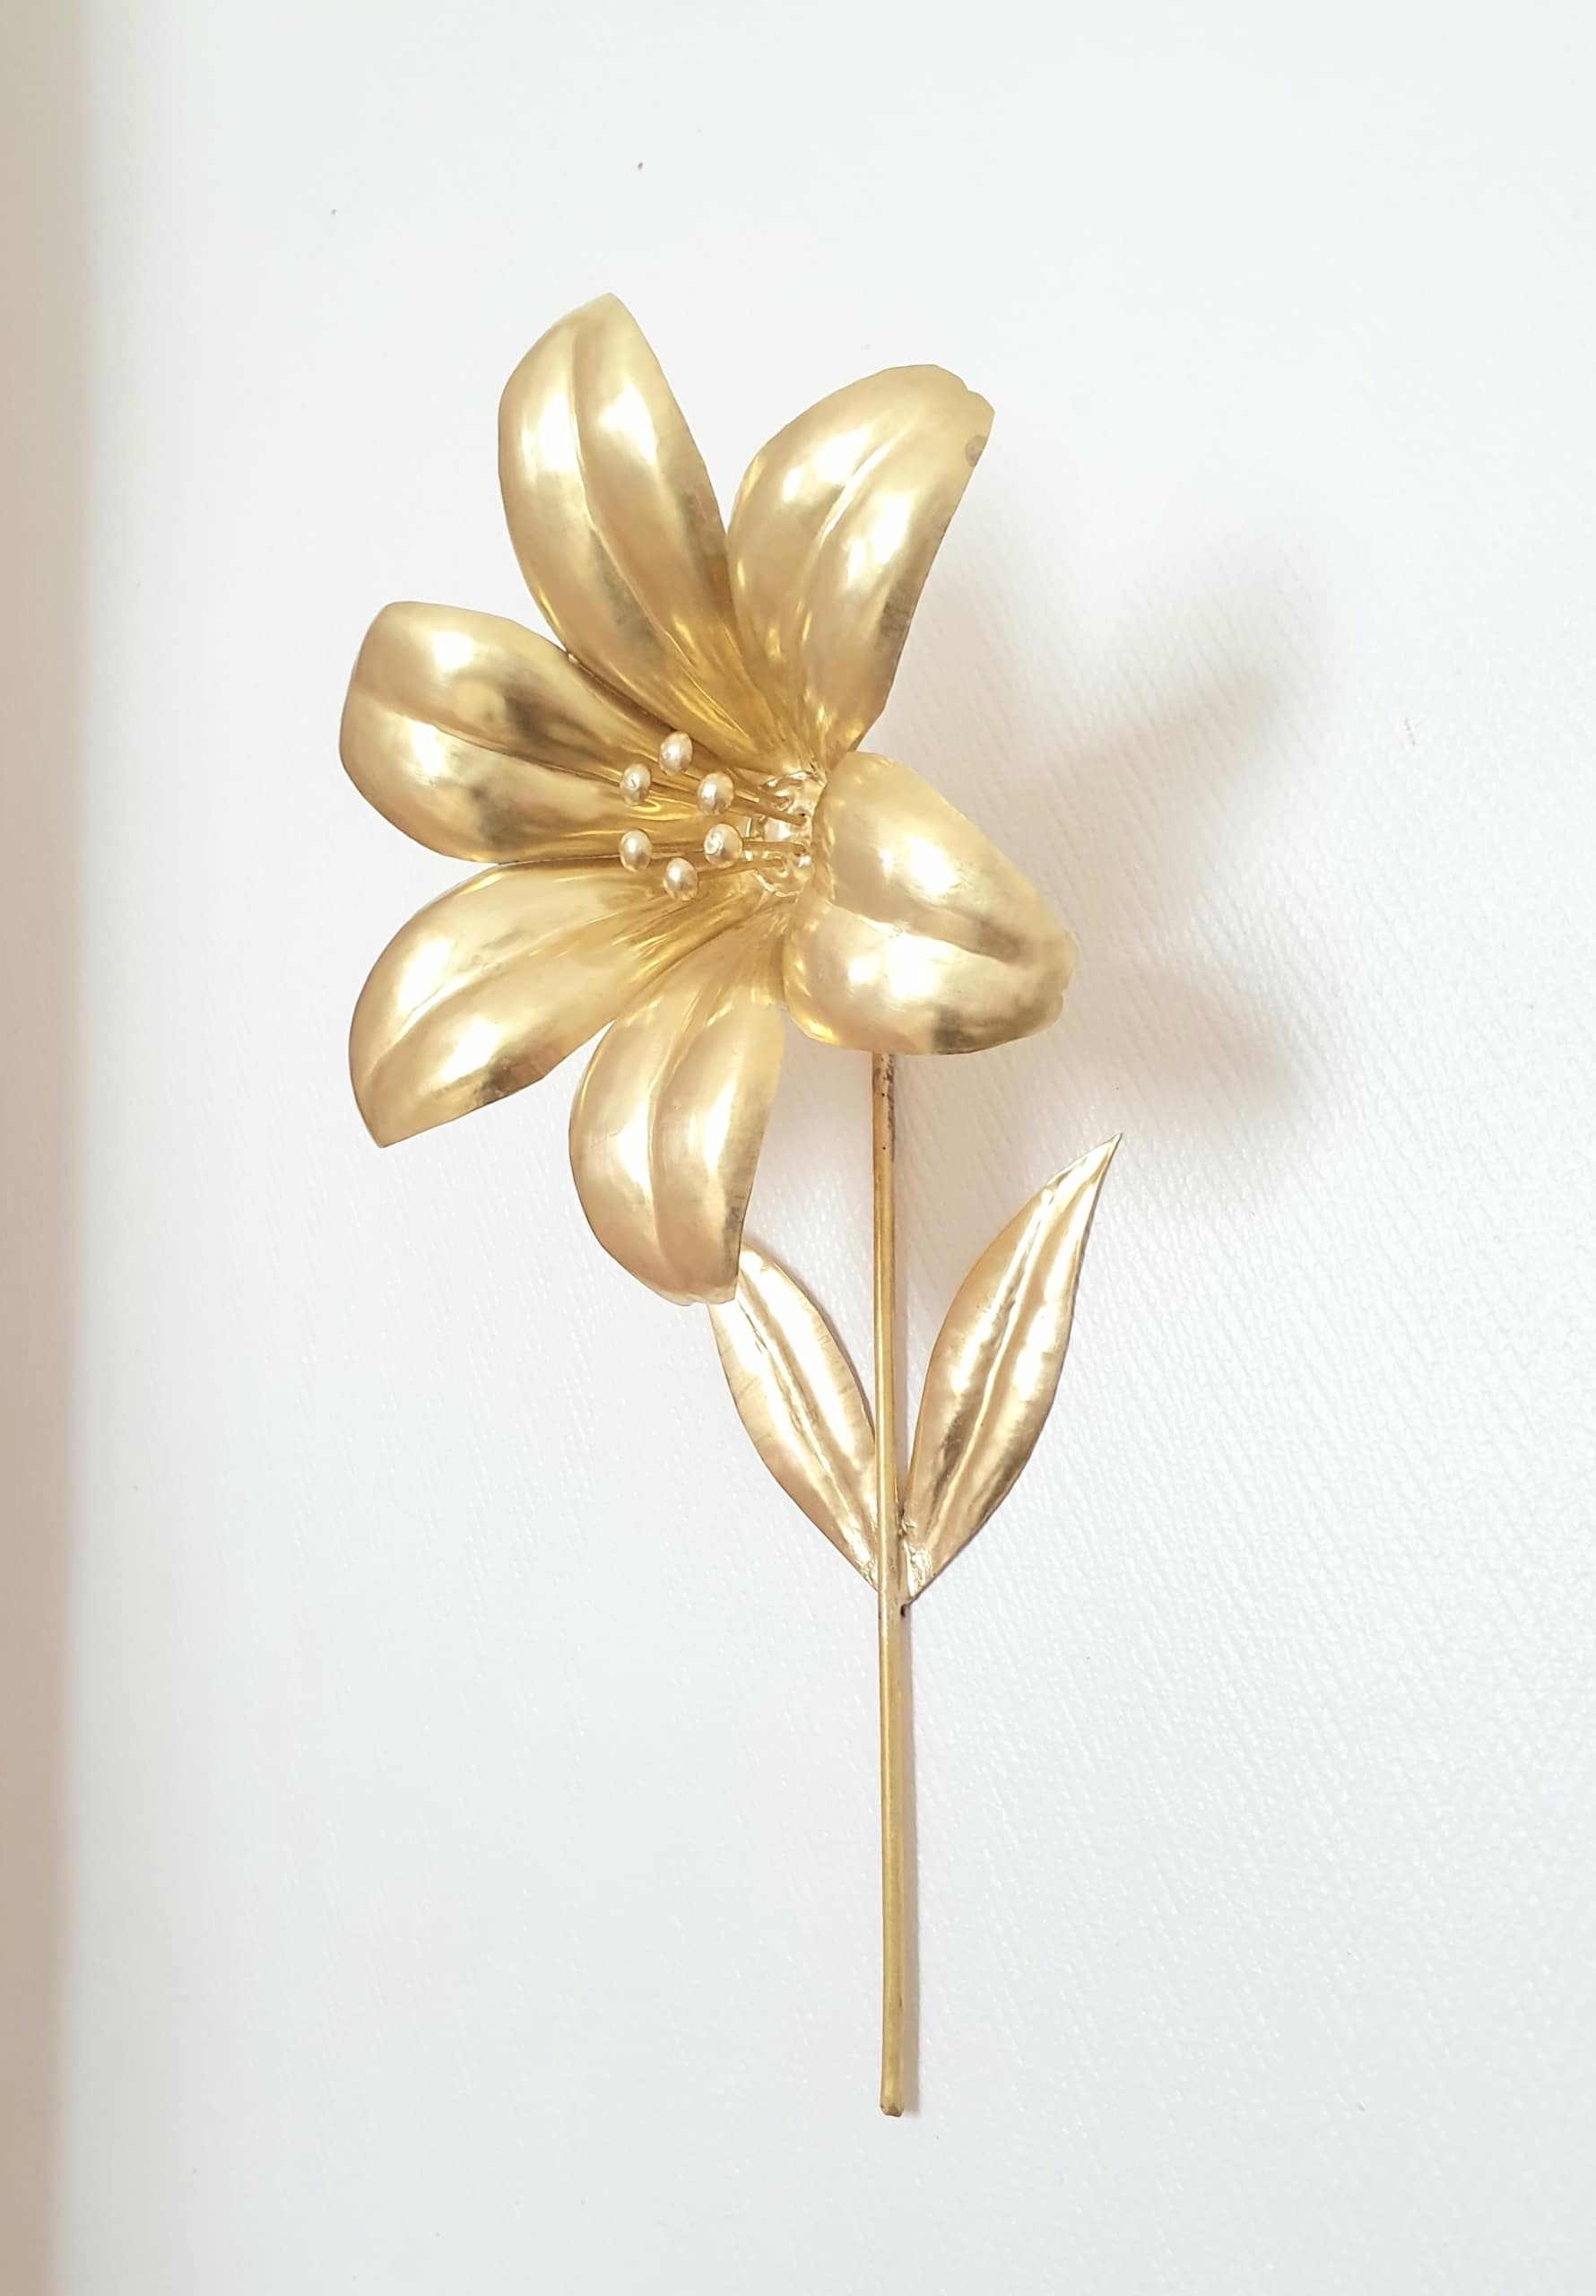 Fleur en métal doré, réalisée à la main - Les Possibles Shop